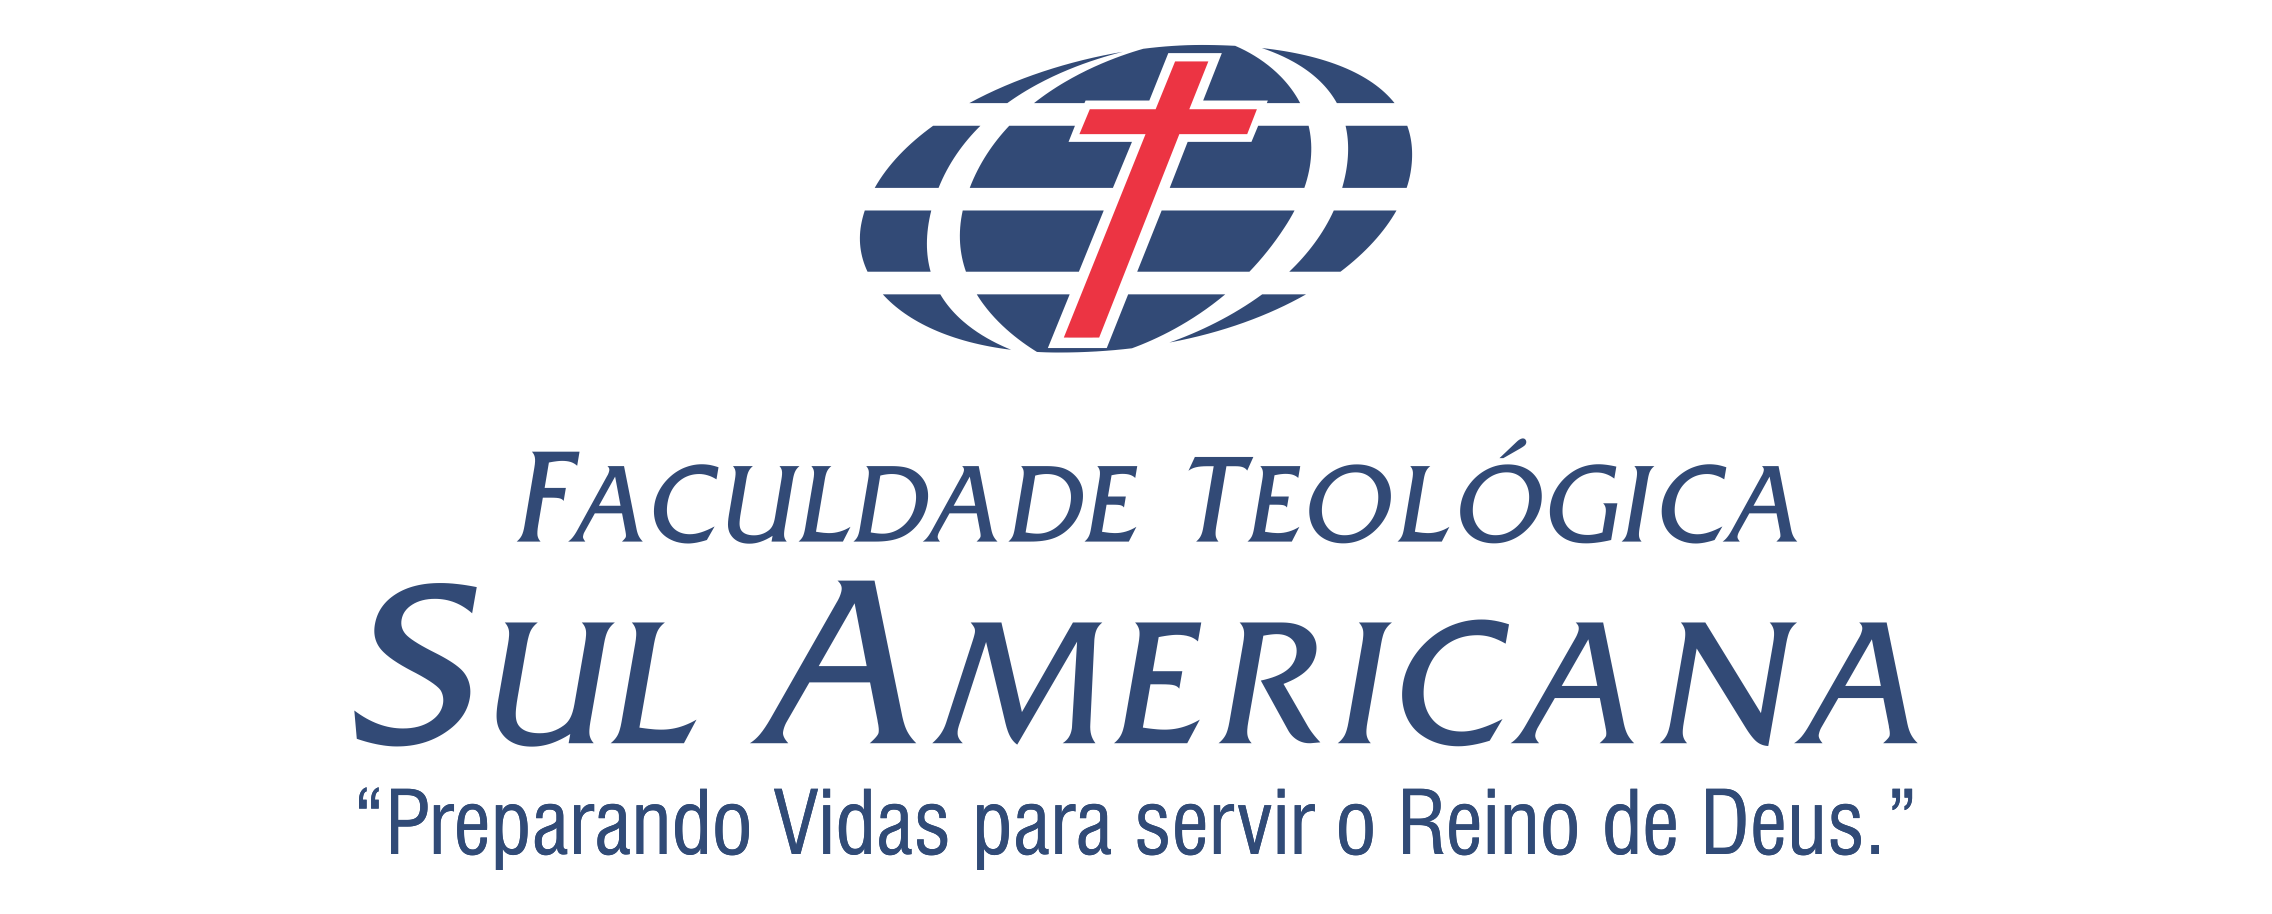 Cuida(n)do – A arte do pastorado – Faculdade Teológica Sul Americana